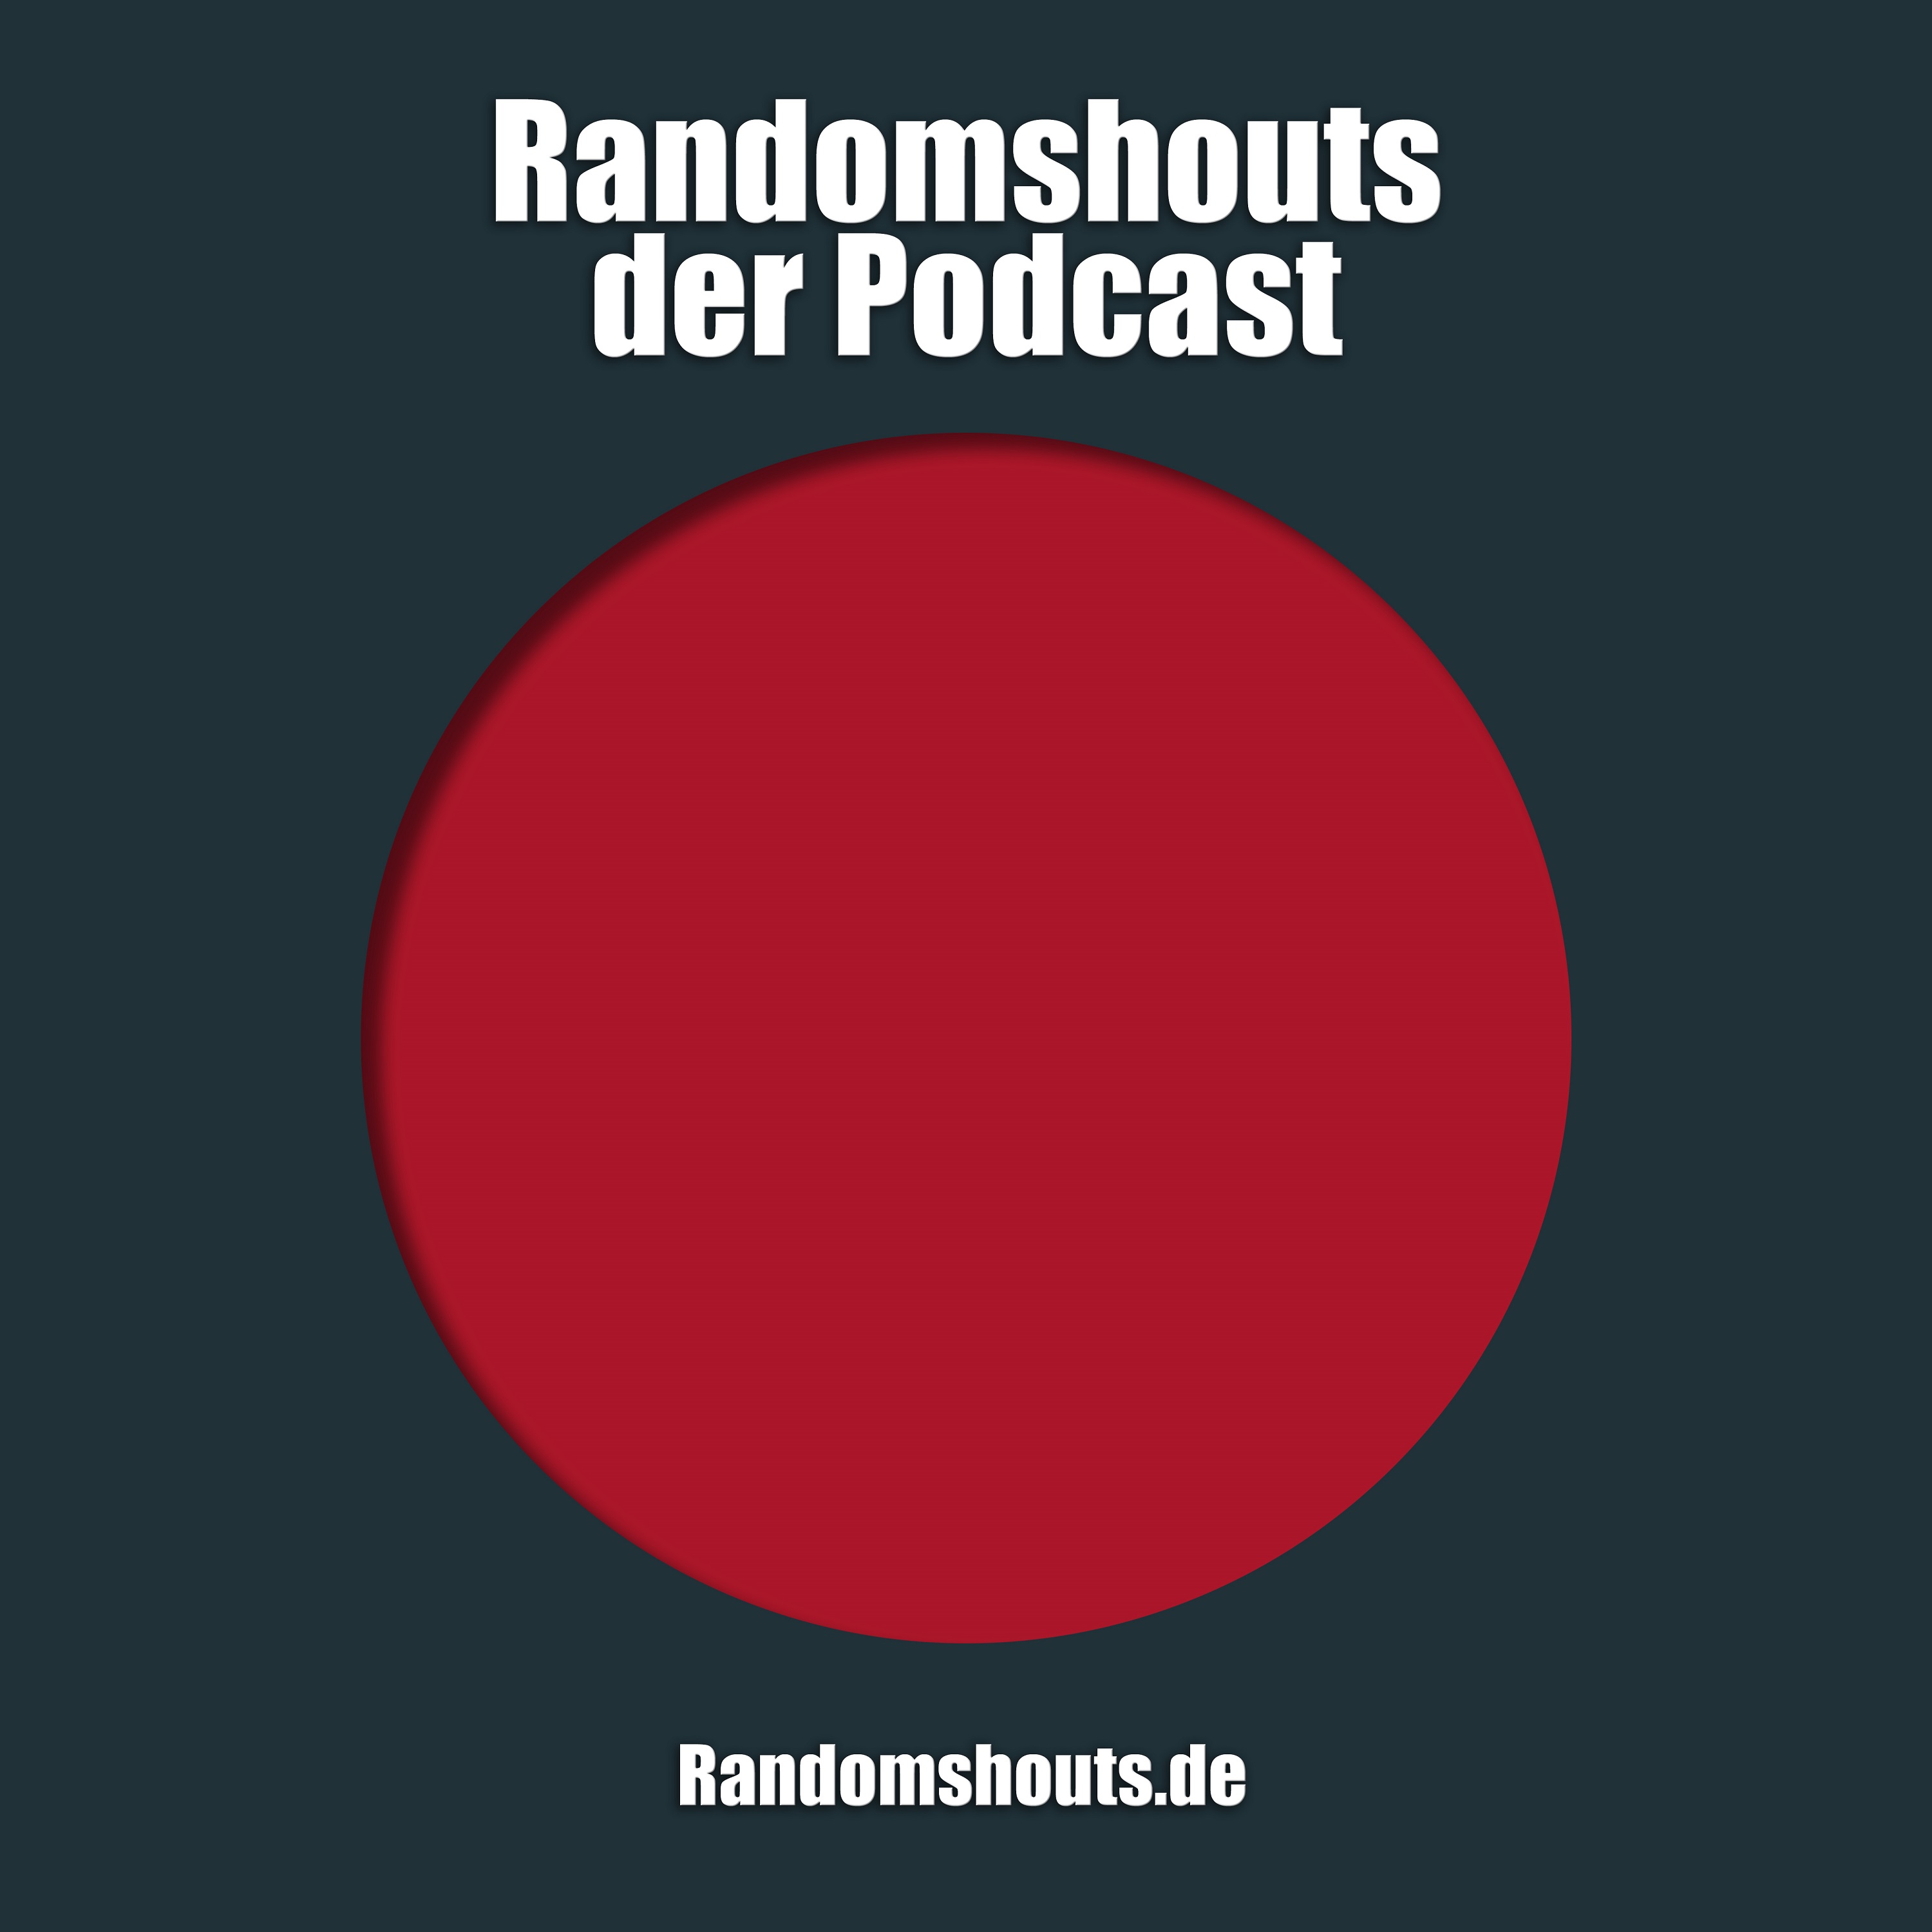 Randomshouts der Podcast - Episode 1: Die Pilotfolge